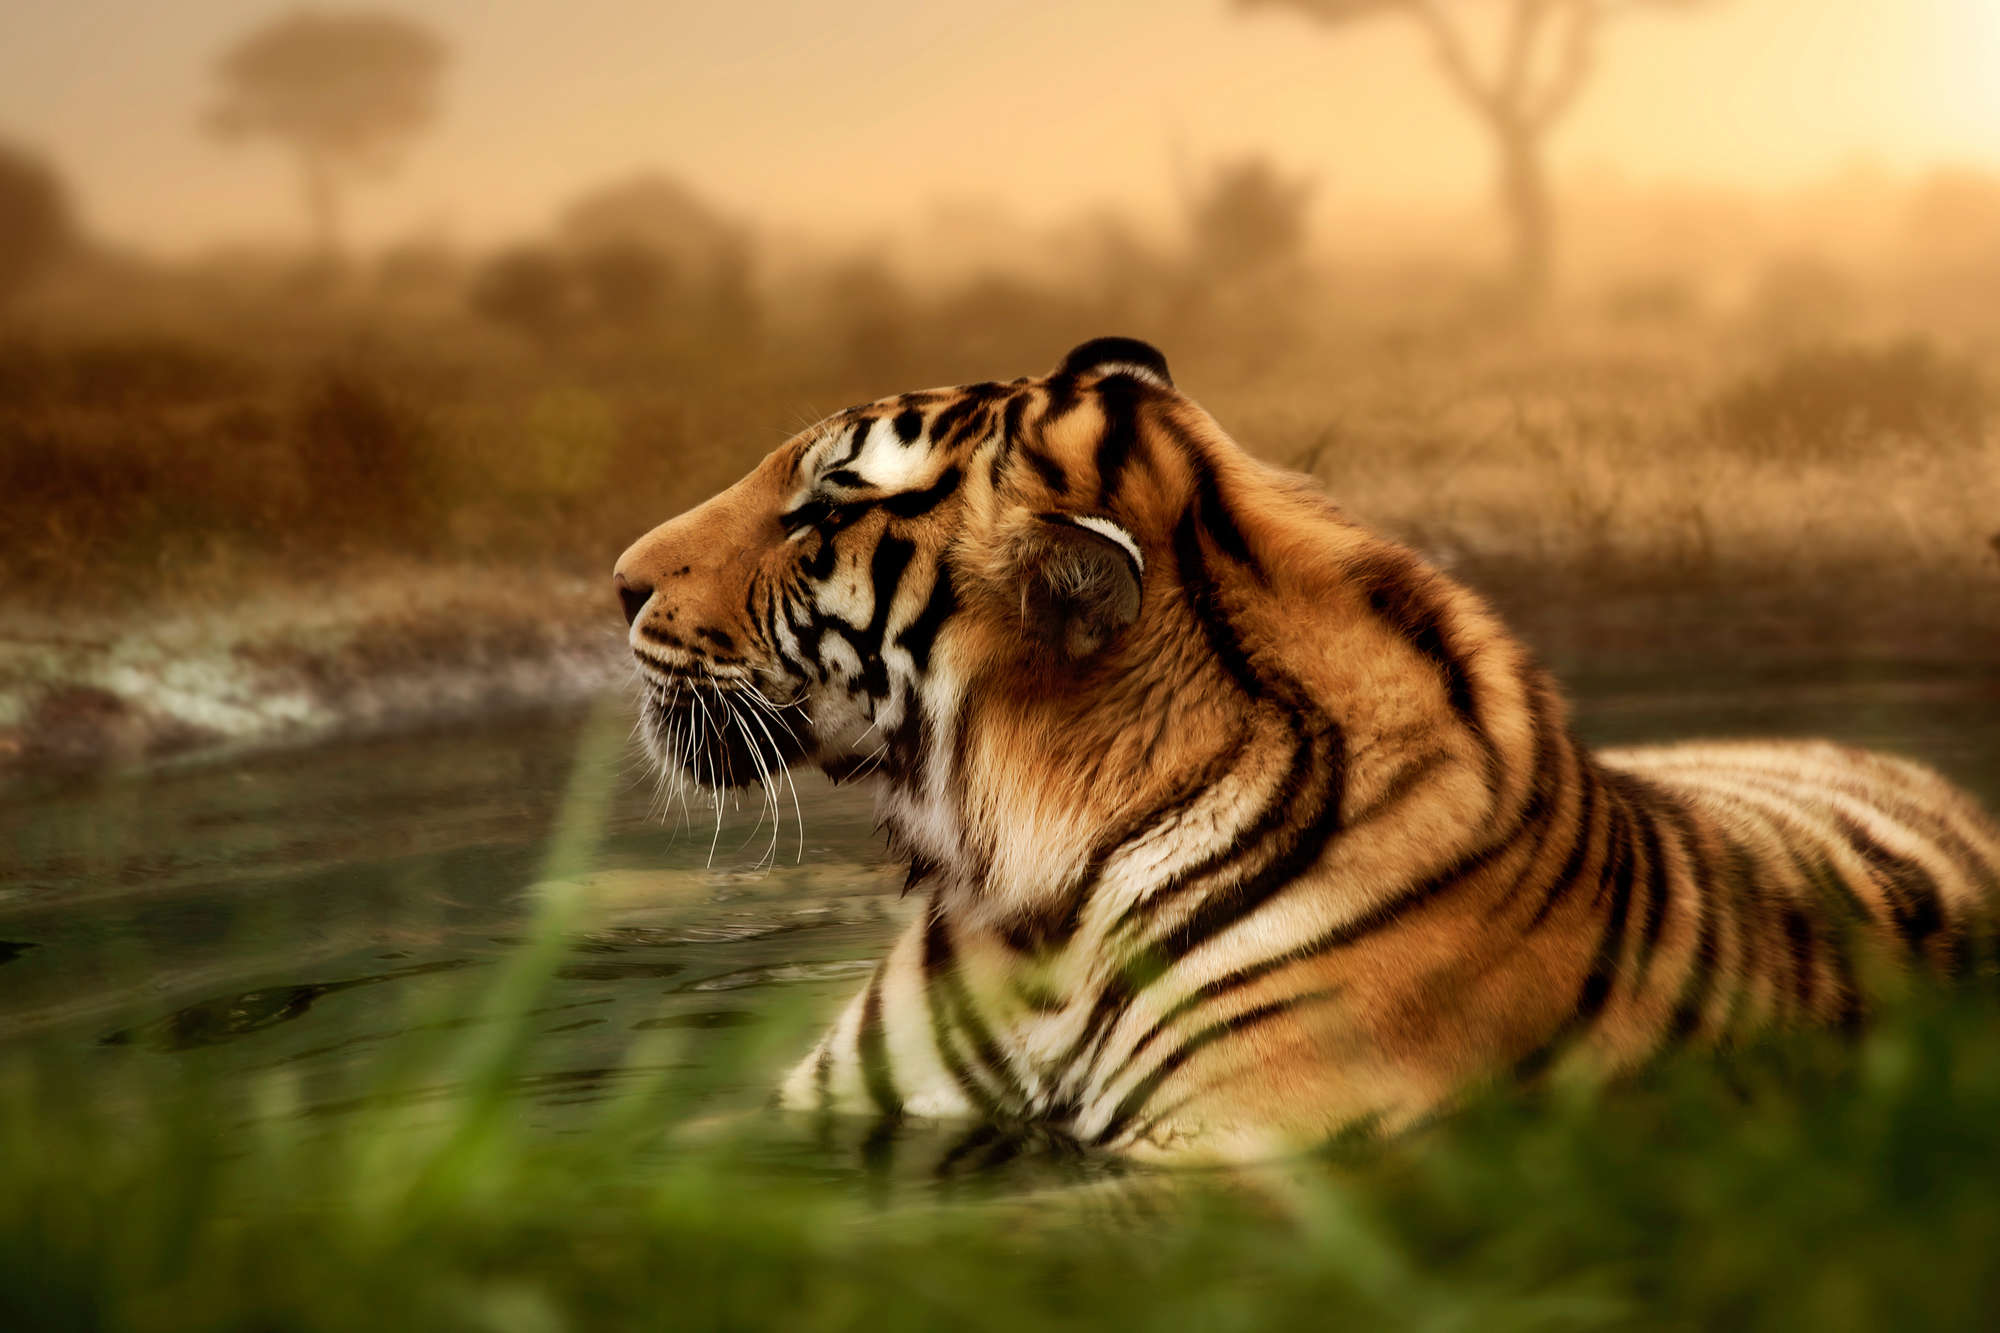             Tiger Fototapete in freier Wildbahn auf Perlmutt Glattvlies
        